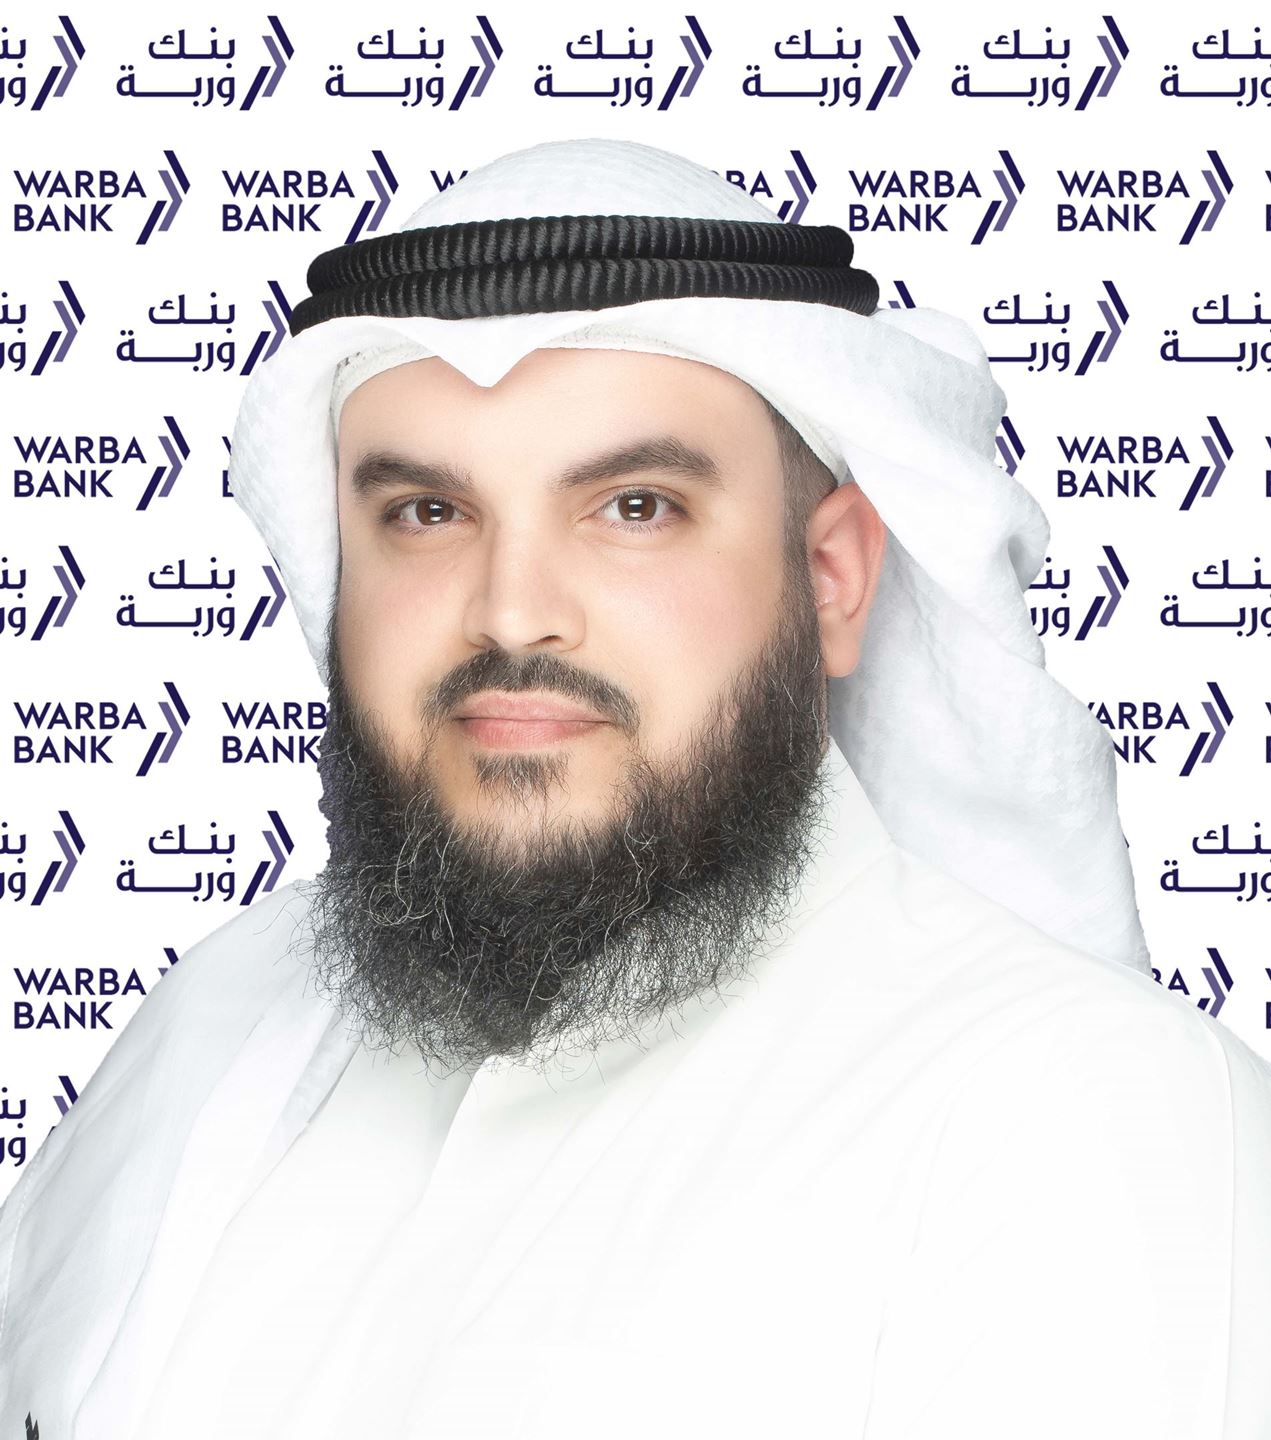 Thuwaini Khalid Al-Thuwaini ... Chief Investment Banking Officer at Warba Bank